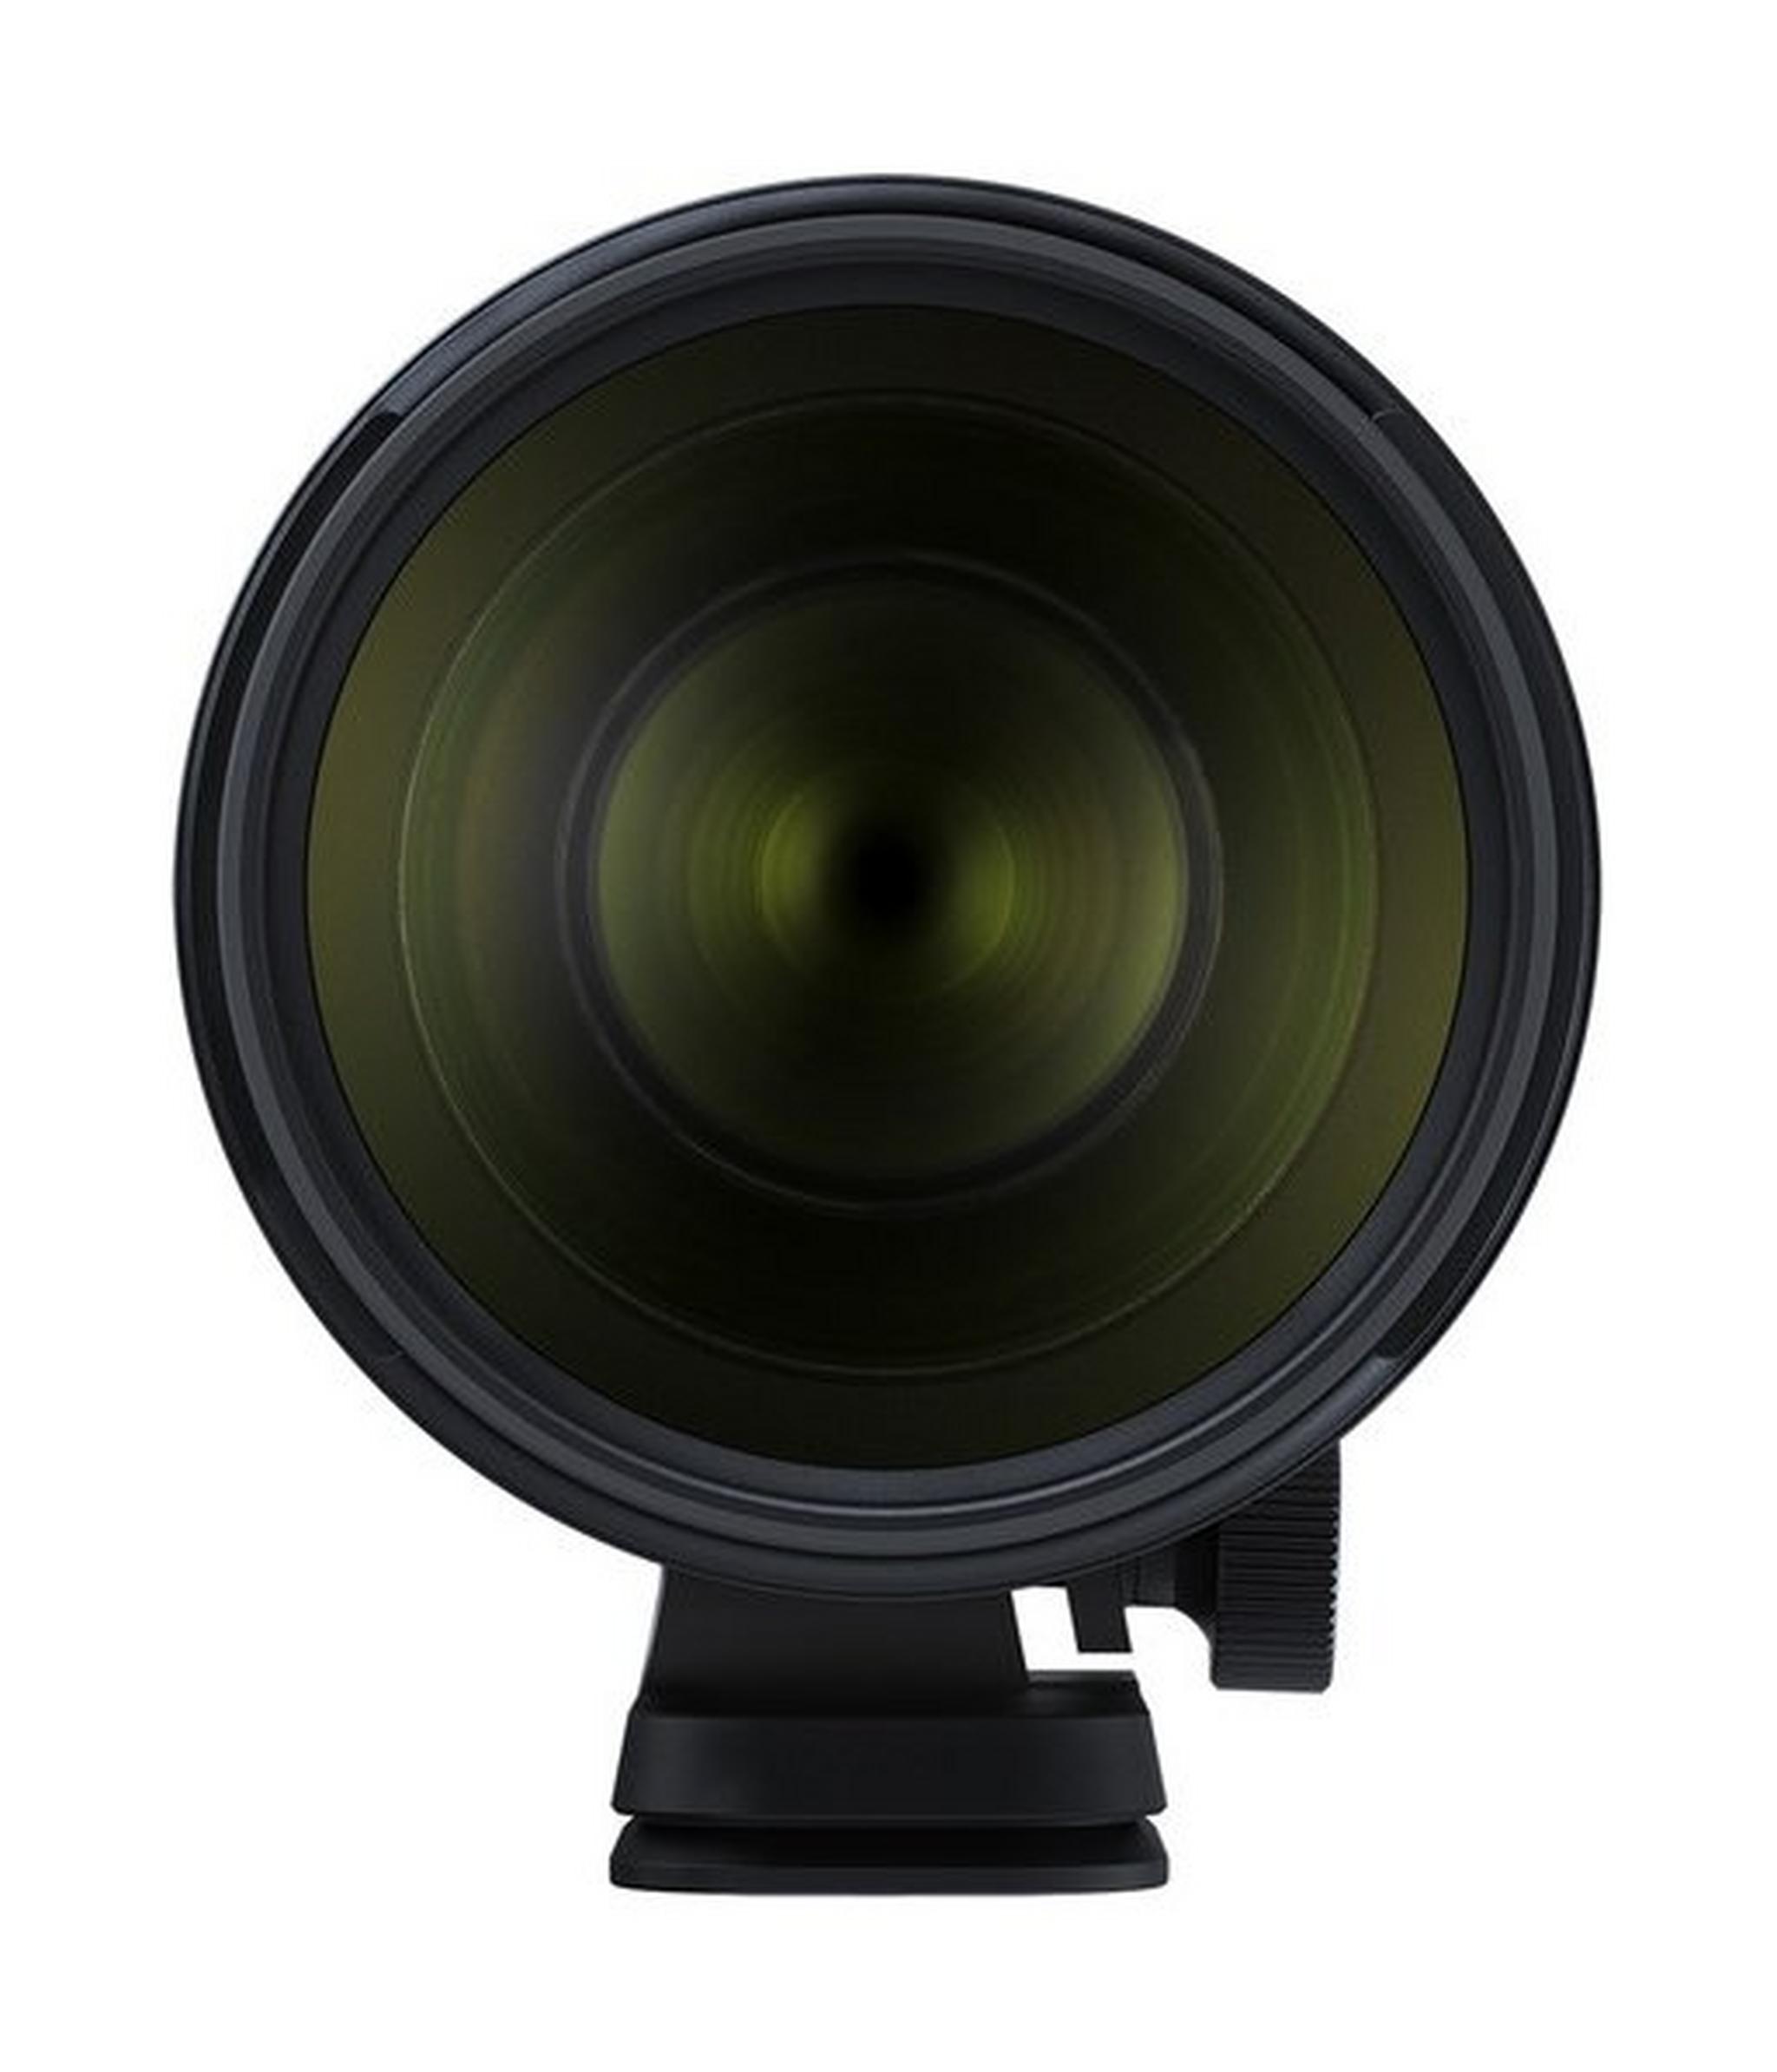 Tamron A025E 70-200mm f/2.8 Di VC USD G2 Lens for Canon - Black